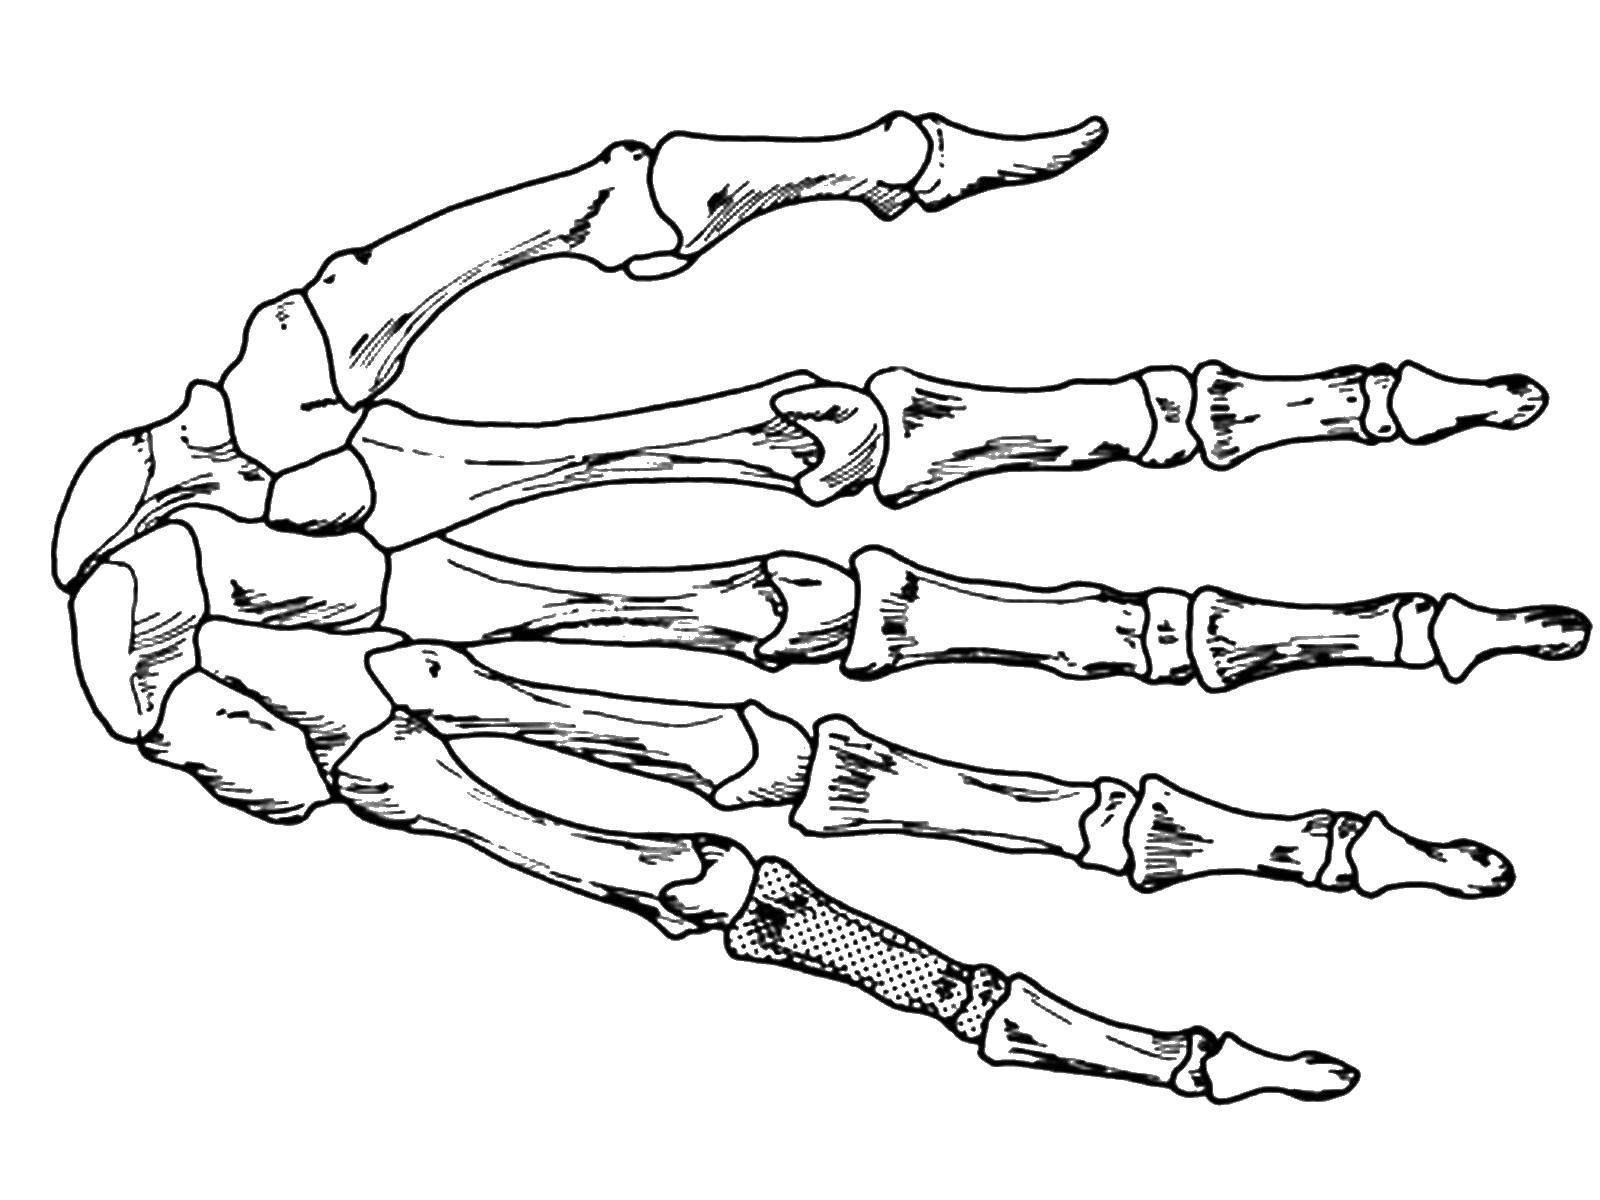 Hand bone. Кисть скелета сбоку. Кисть руки скелет. Рука скелета сбоку рисунок. Кисть руки скелет анатомия.